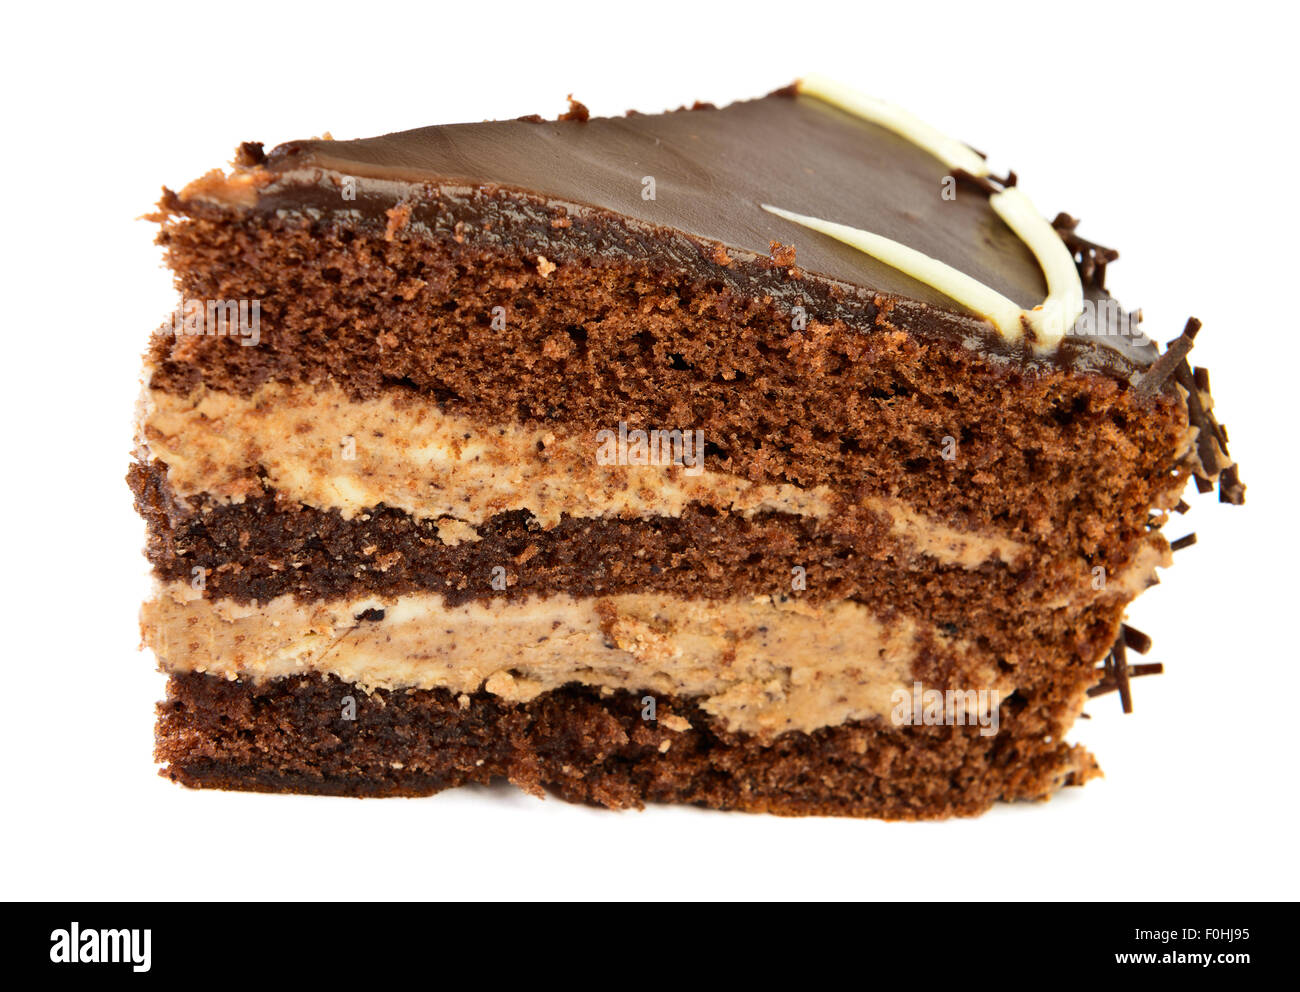 Tranche de gâteau au chocolat sur fond blanc Banque D'Images